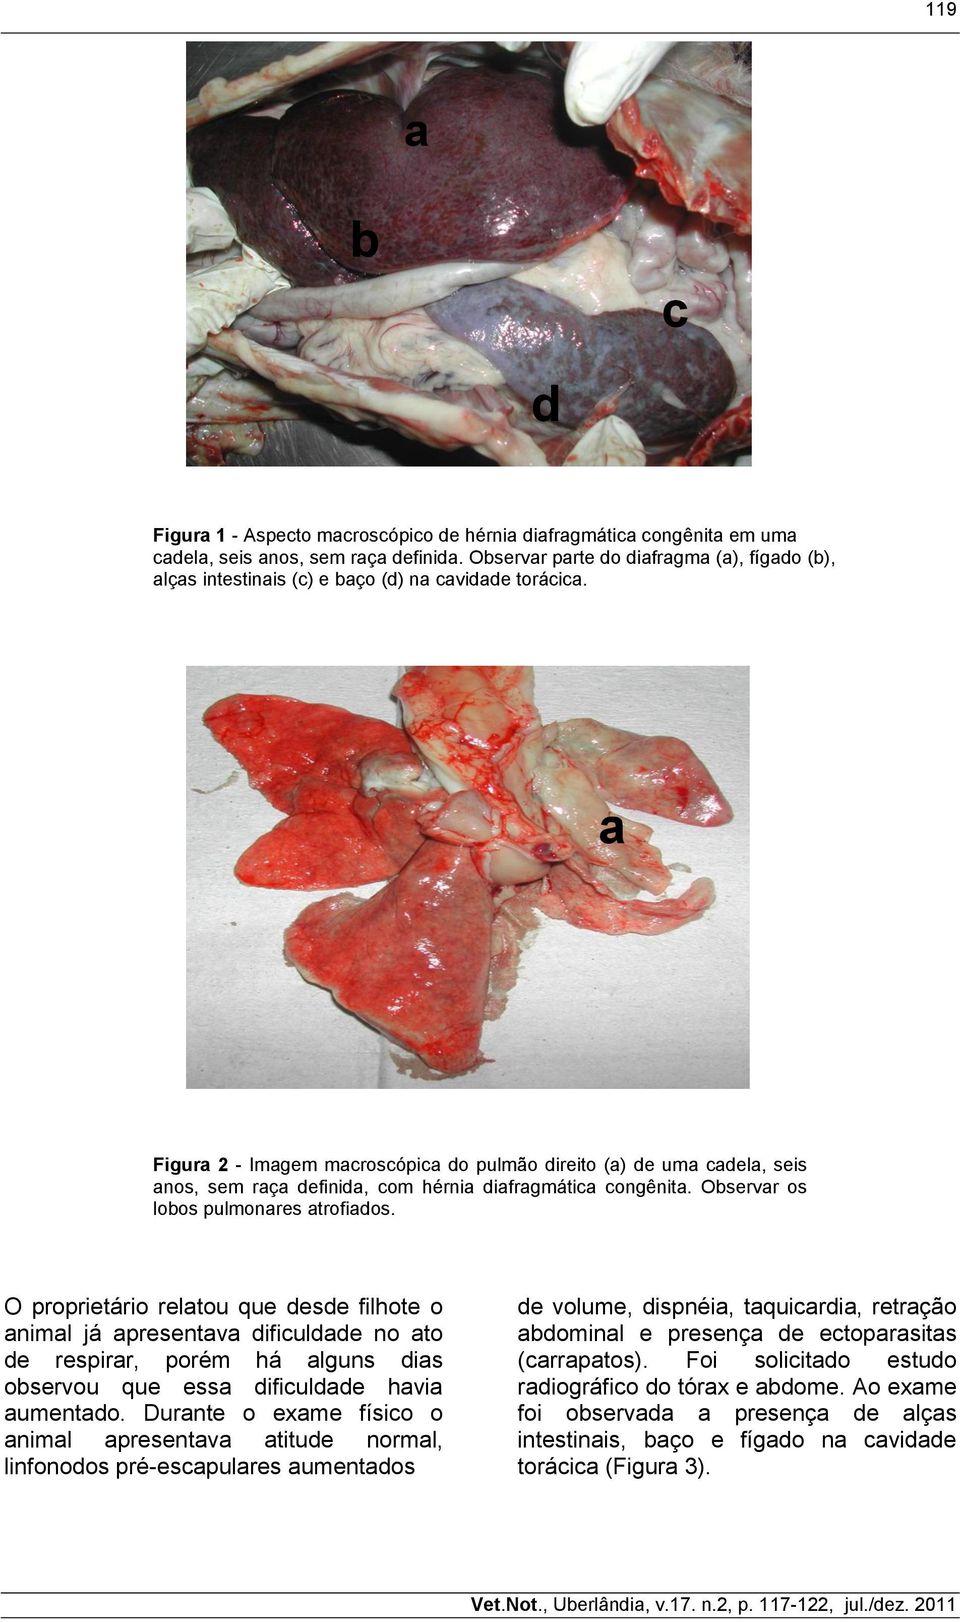 a Figura 2 - Imagem macroscópica do pulmão direito (a) de uma cadela, seis anos, sem raça definida, com hérnia diafragmática congênita. Observar os lobos pulmonares atrofiados.